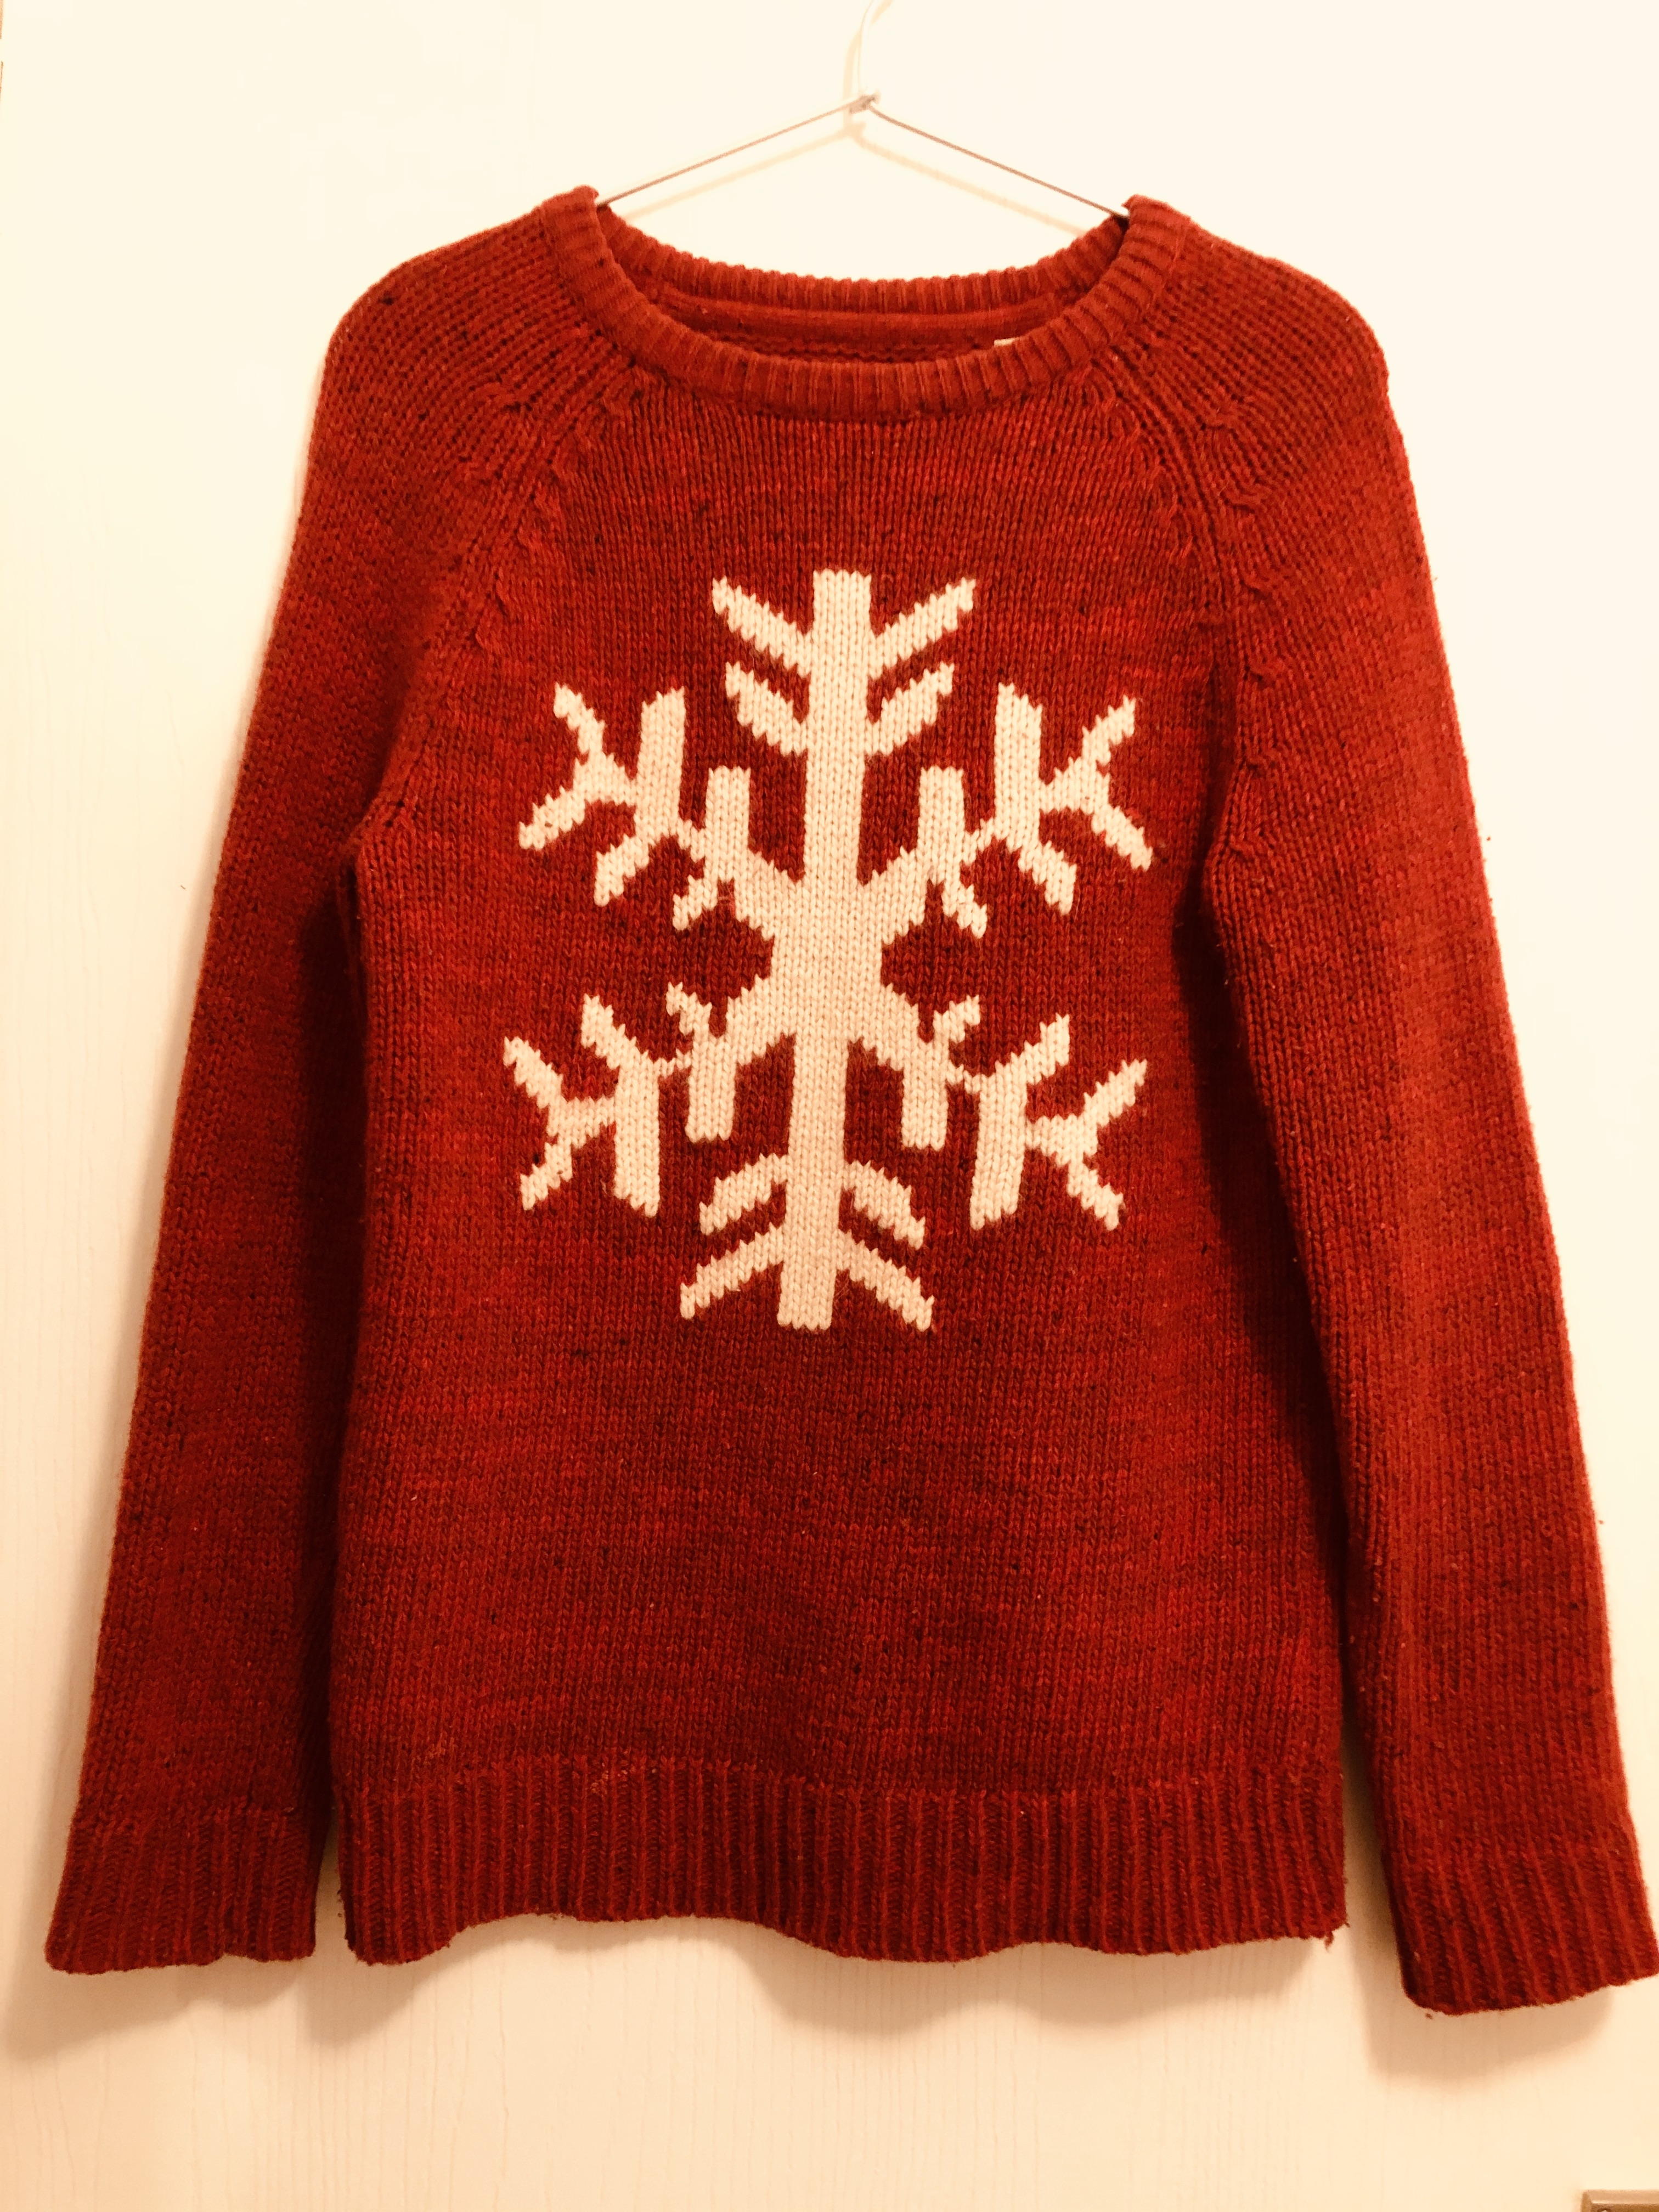 イギリス人は、なぜクリスマスにおバカなセーターを着るのか